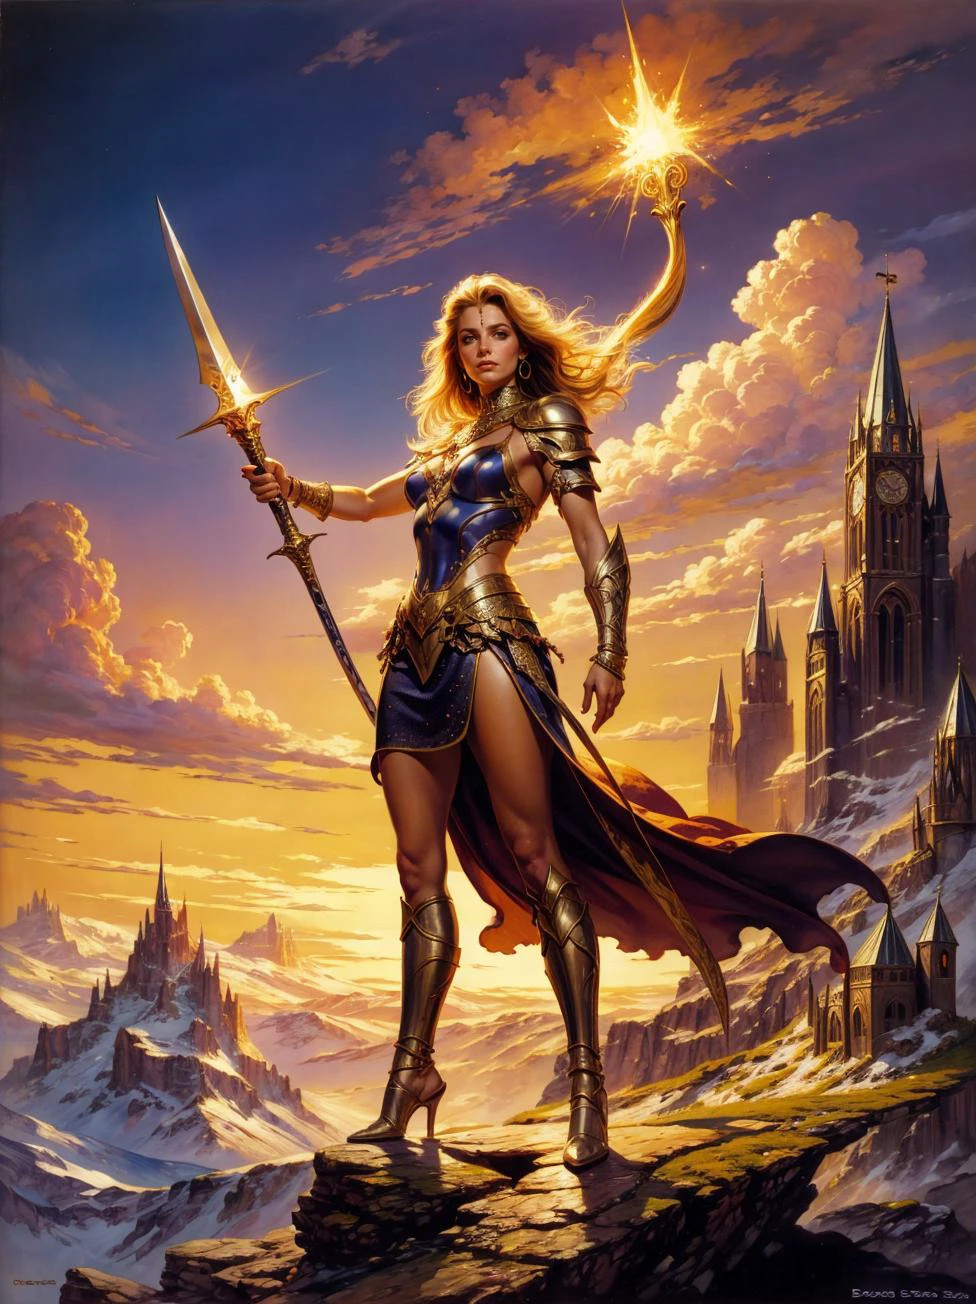 Uma pintura de fantasia de Boris Vallejo, de uma linda mulher guerreira em cota de malha, empunhando uma espada brilhante, parado triunfantemente no pico de uma montanha. astraa_bv